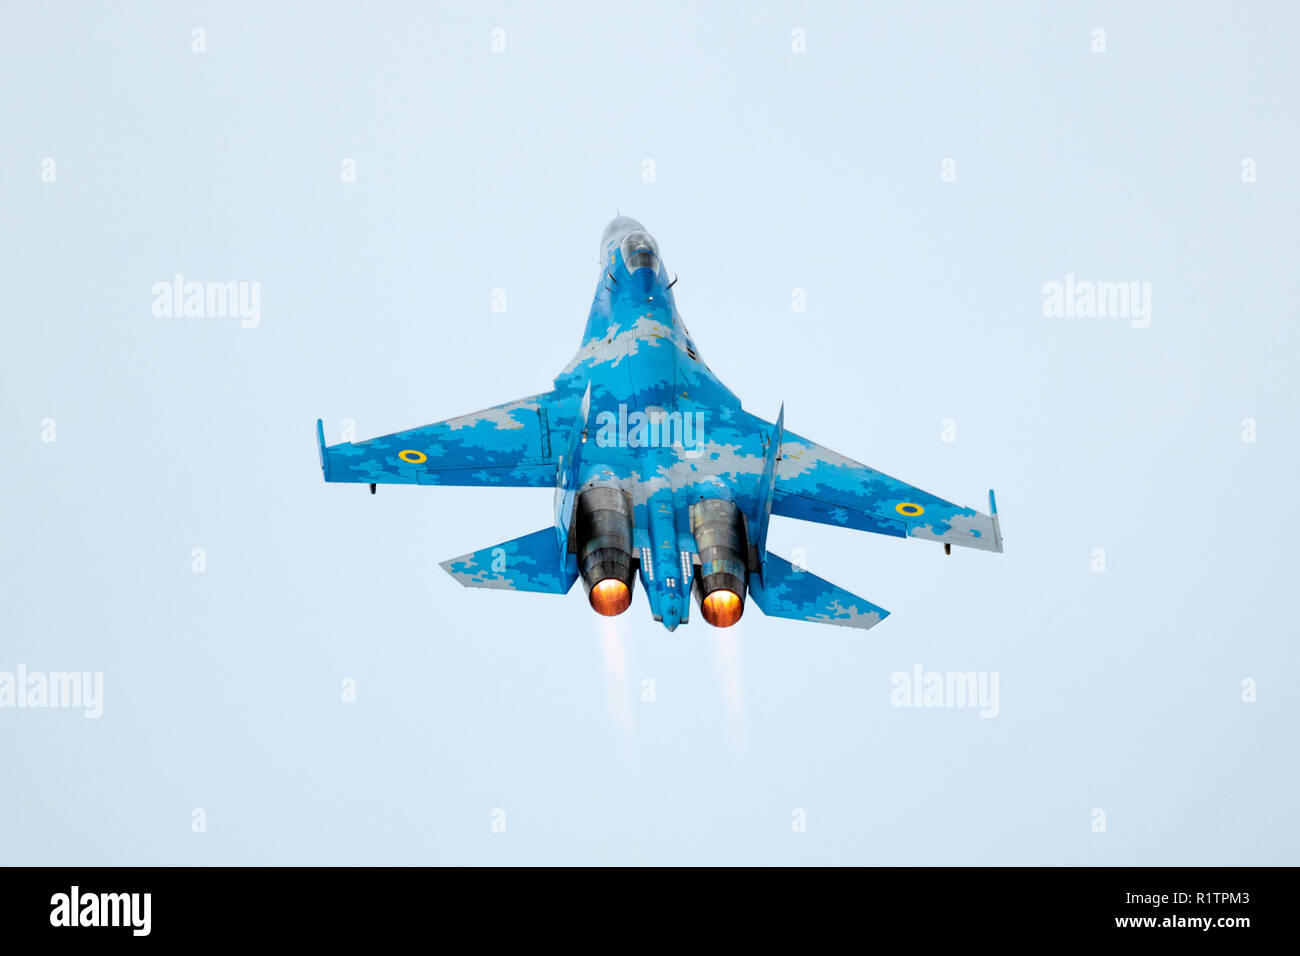 KLEINE BROGEL, BELGIQUE - SEP 8, 2018 : l'Armée de l'air ukrainienne Sukhoi Su-27 FLANKER fighter jet avions qui décollent avec de postcombustion de Oostende Banque D'Images